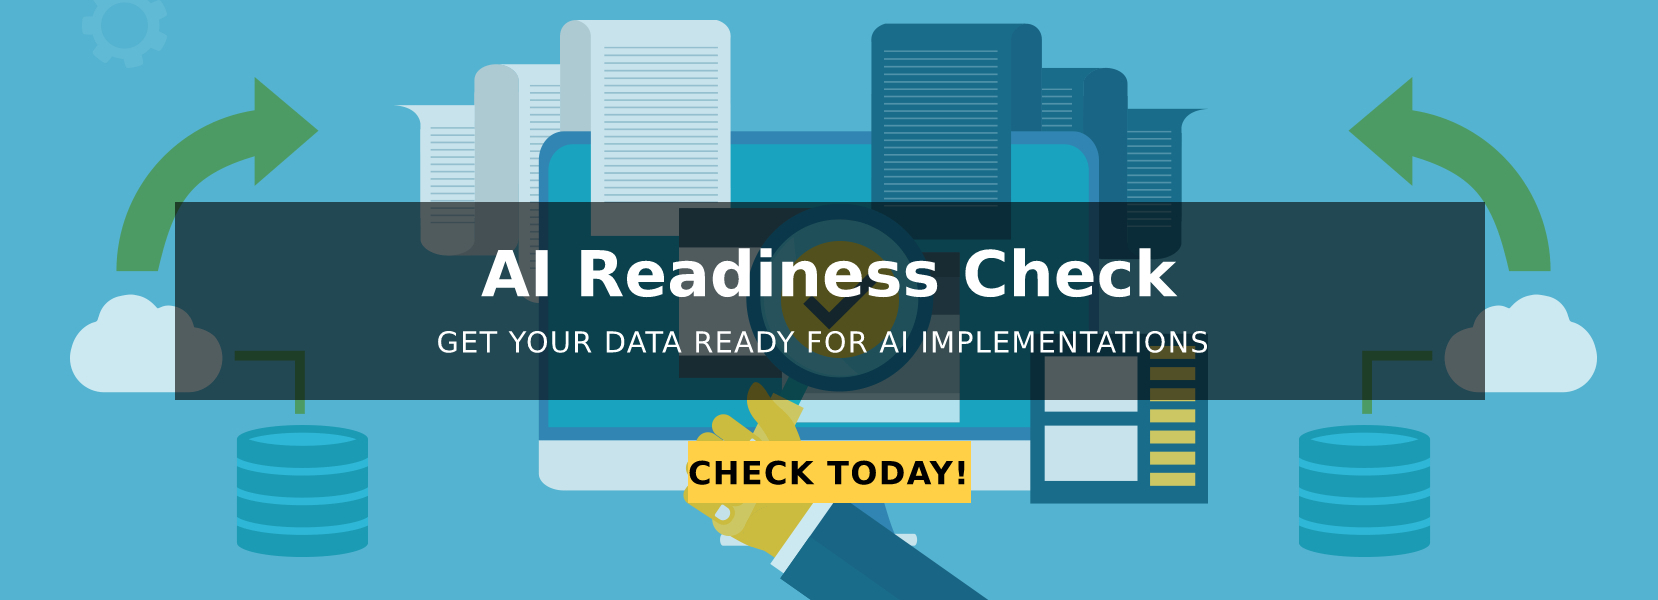 AI Readiness Check